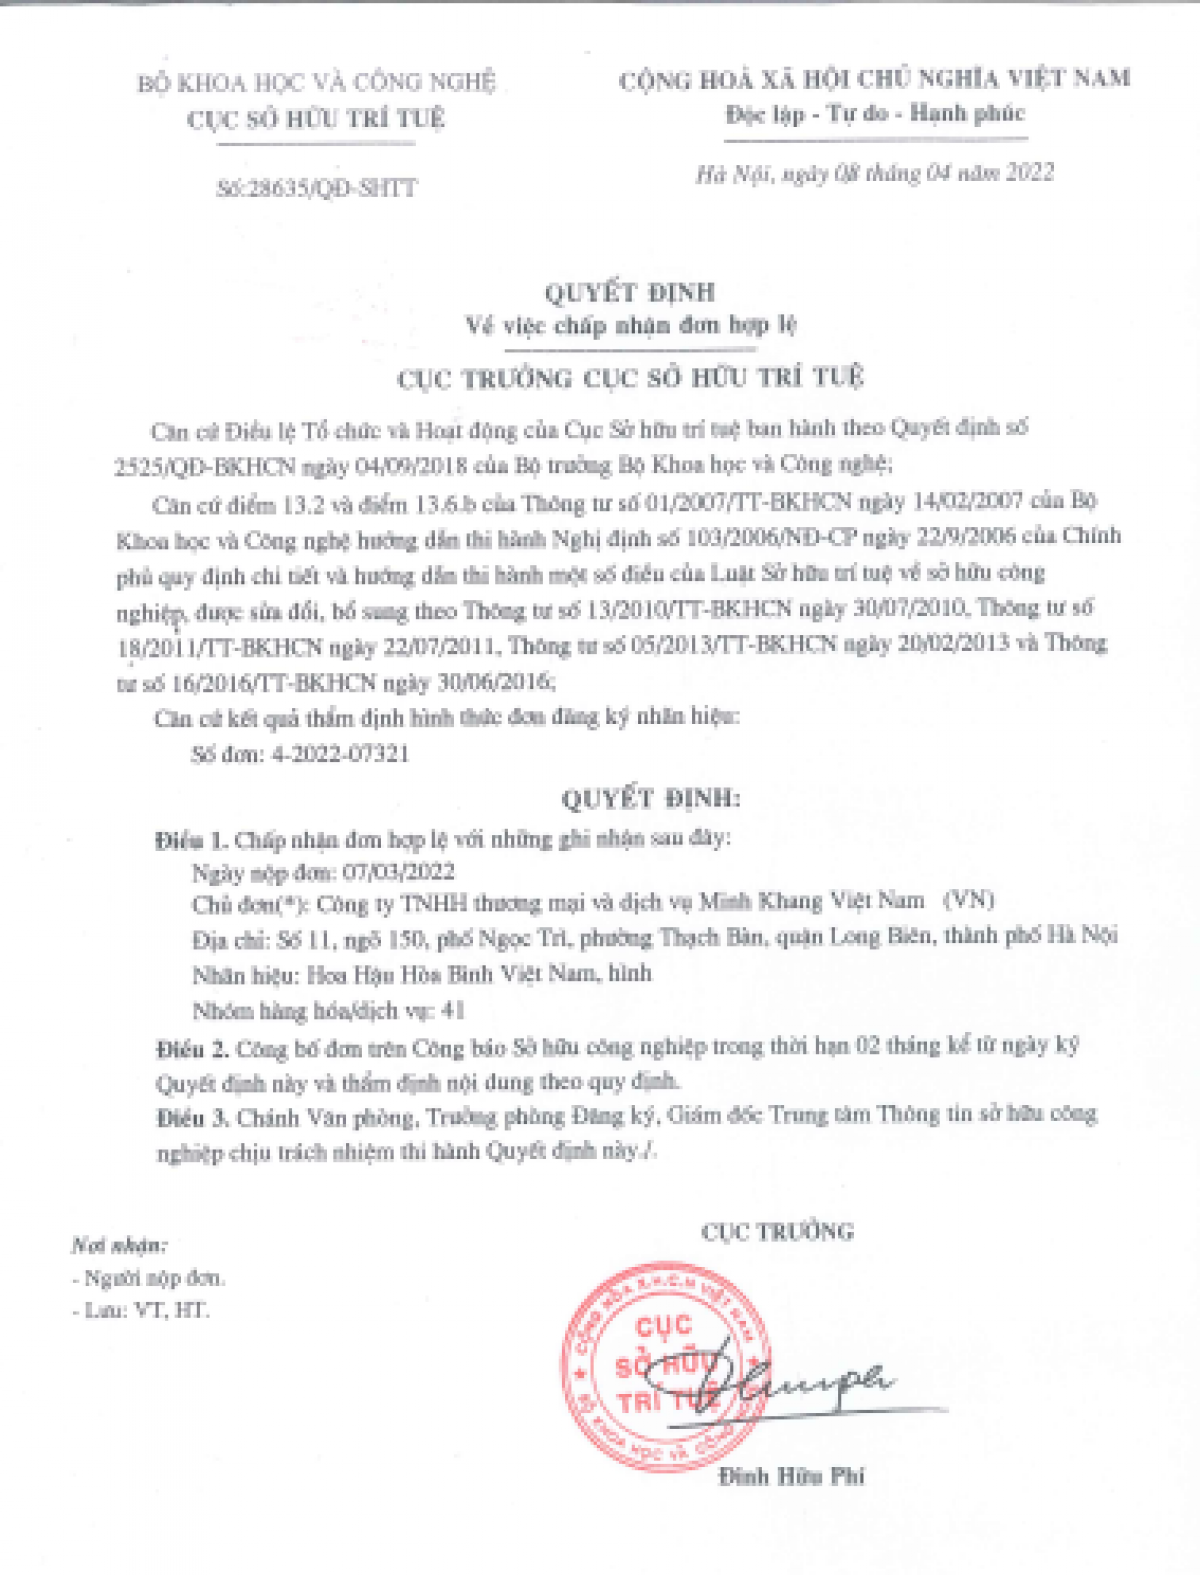 Quyết định do Cục trưởng Cục Sở hữu Trí tuệ ký ngày 8/4/2022 về việc chấp nhận đơn hợp lệ 6 nhãn hiệu kèm hình của công ty Minh Khang